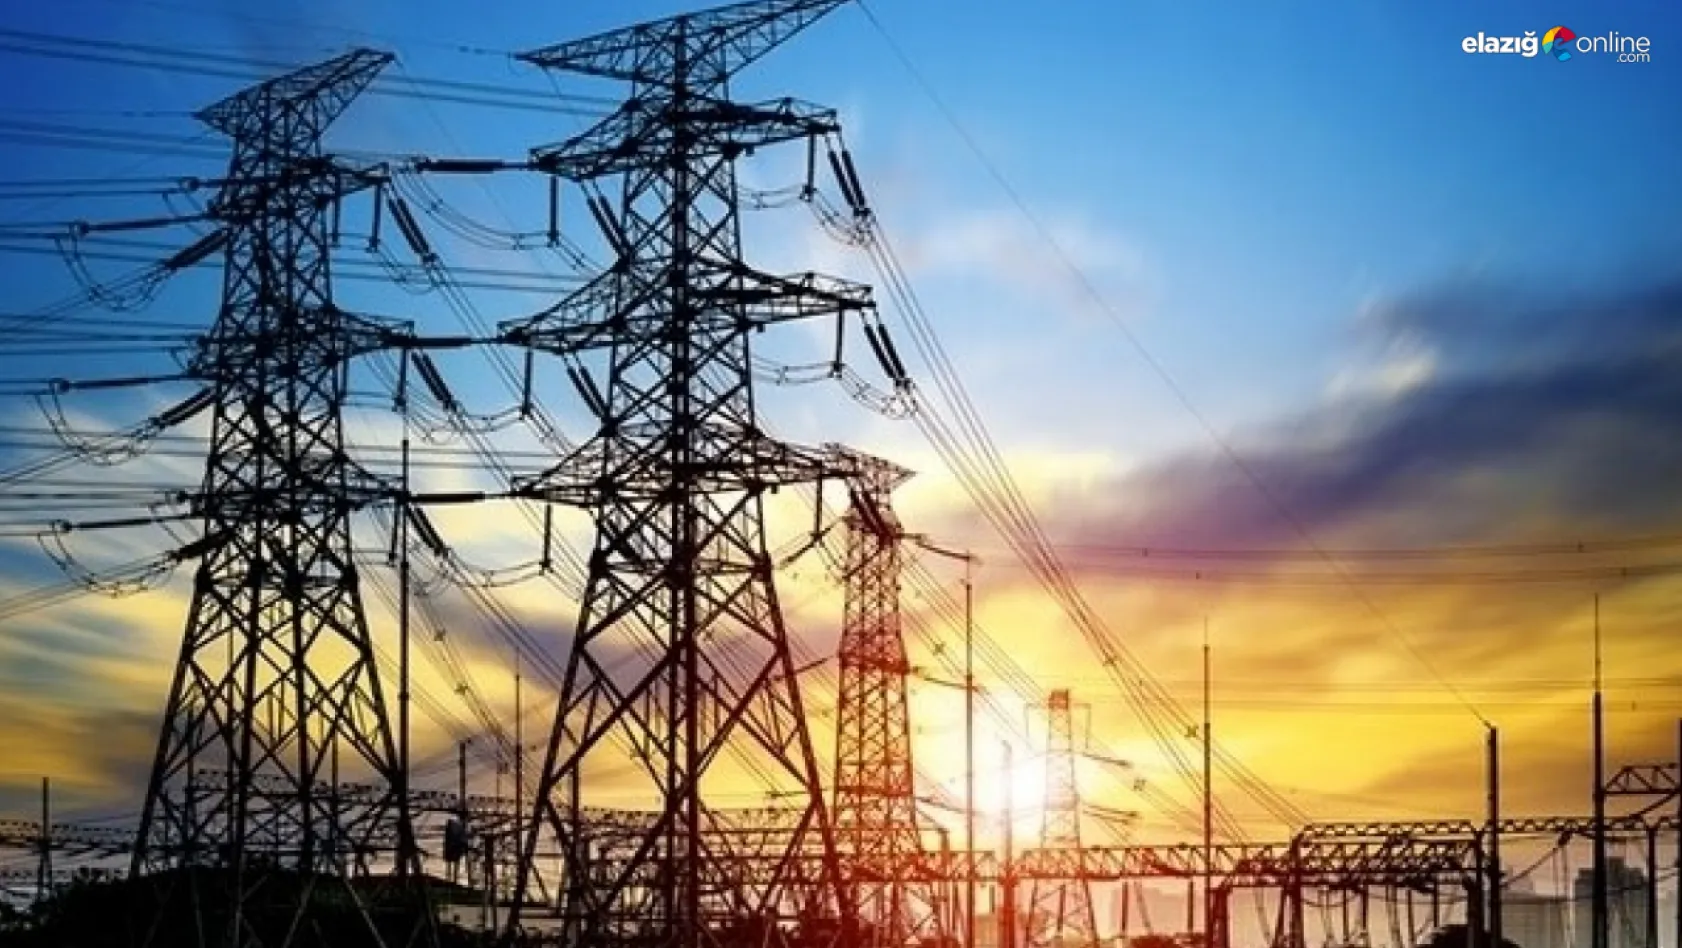 AKSA Elektrik bölgenin elektrik tüketim oranlarını açıkladı! İşte Elazığ'ın tüketim verileri